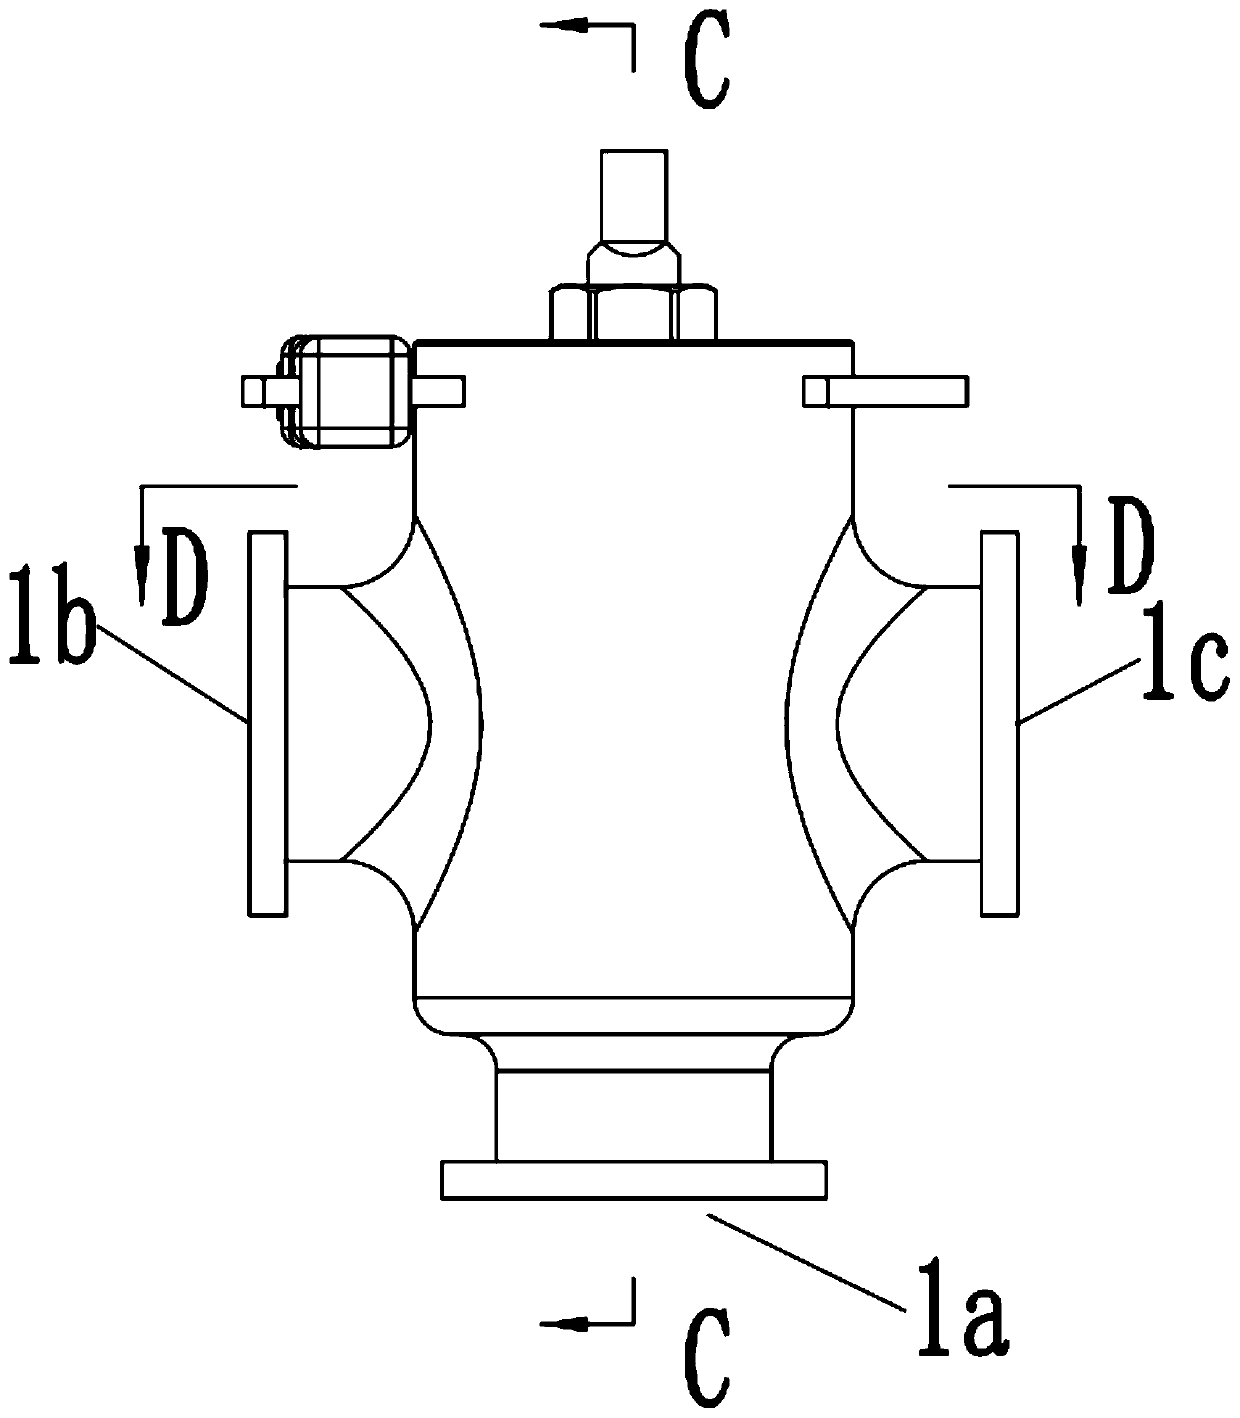 a ball valve